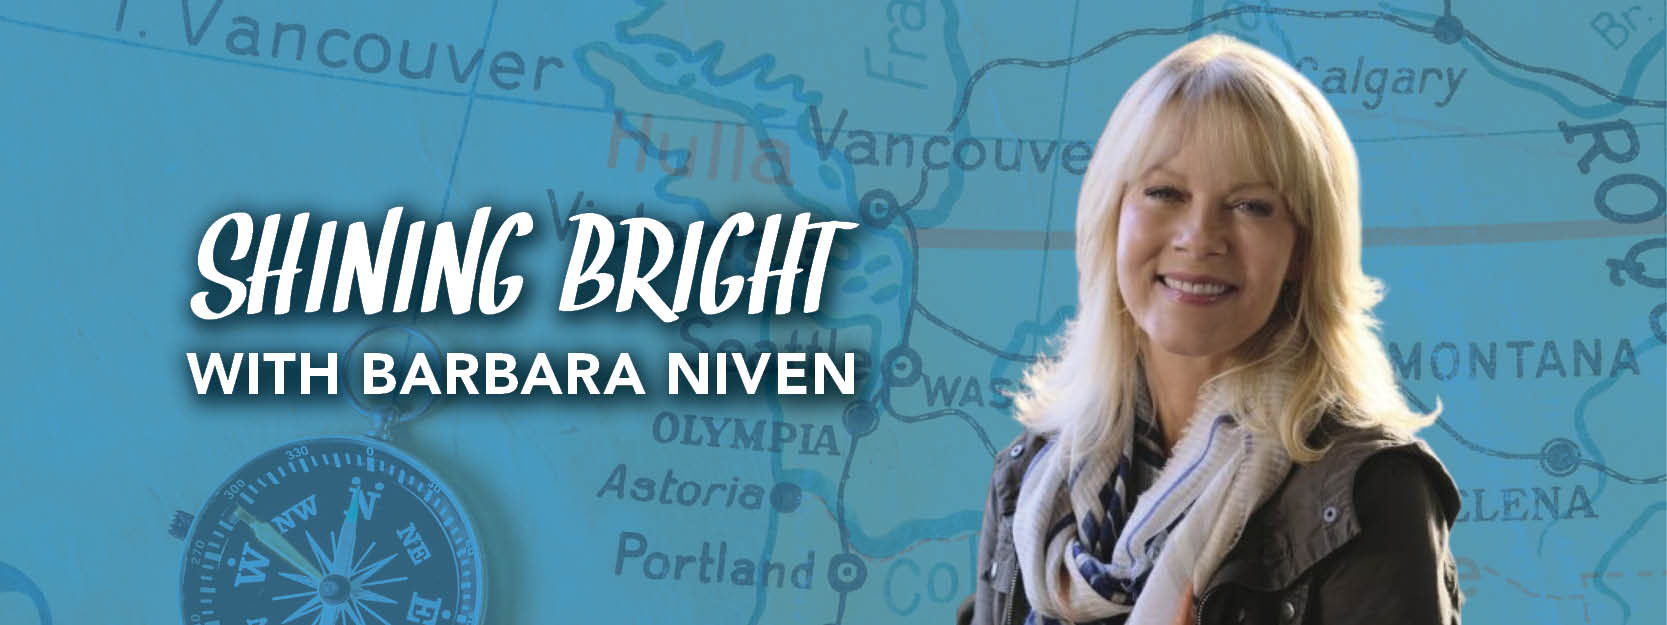 Shining Bright with Barbara Niven 